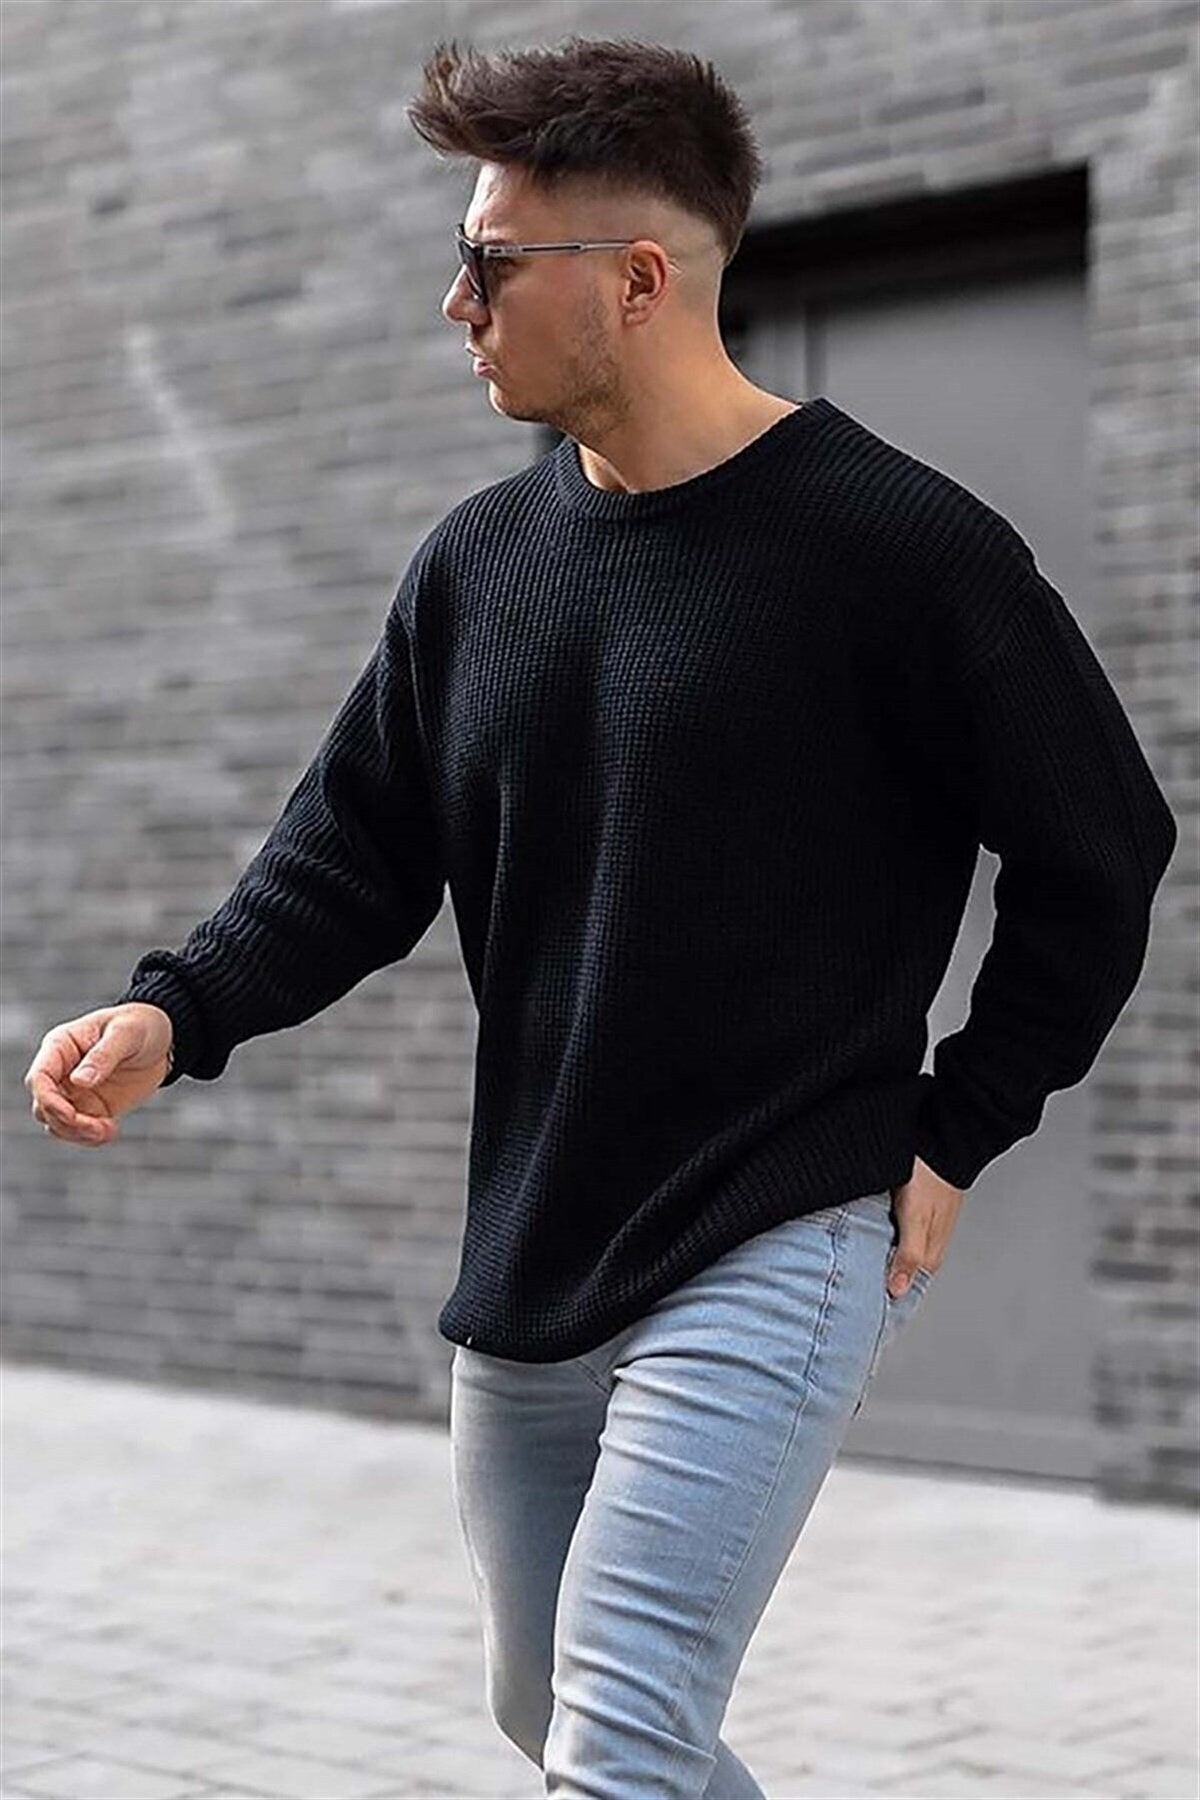 Premium Stylish Sweater